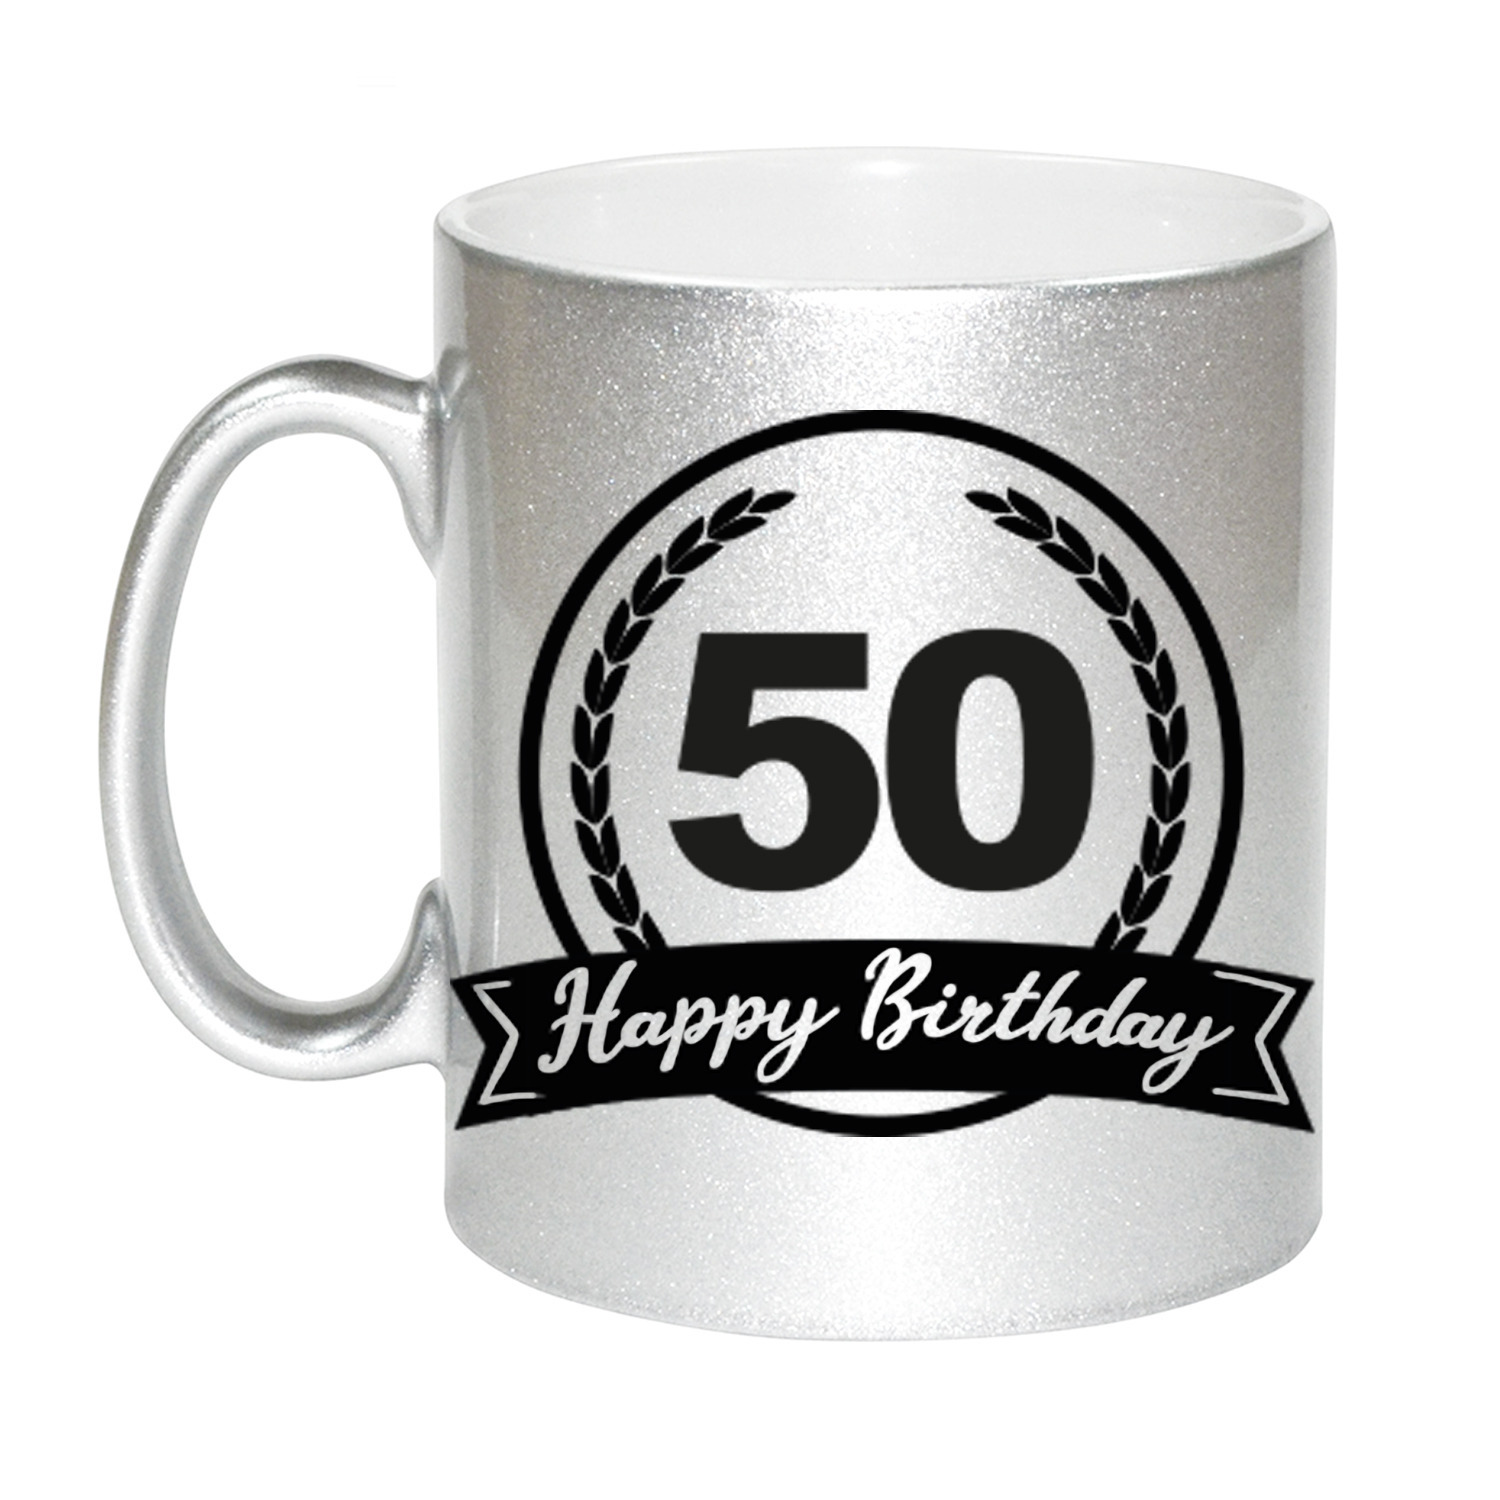 Happy Birthday 50 years zilveren cadeau mok / beker met wimpel 330 ml